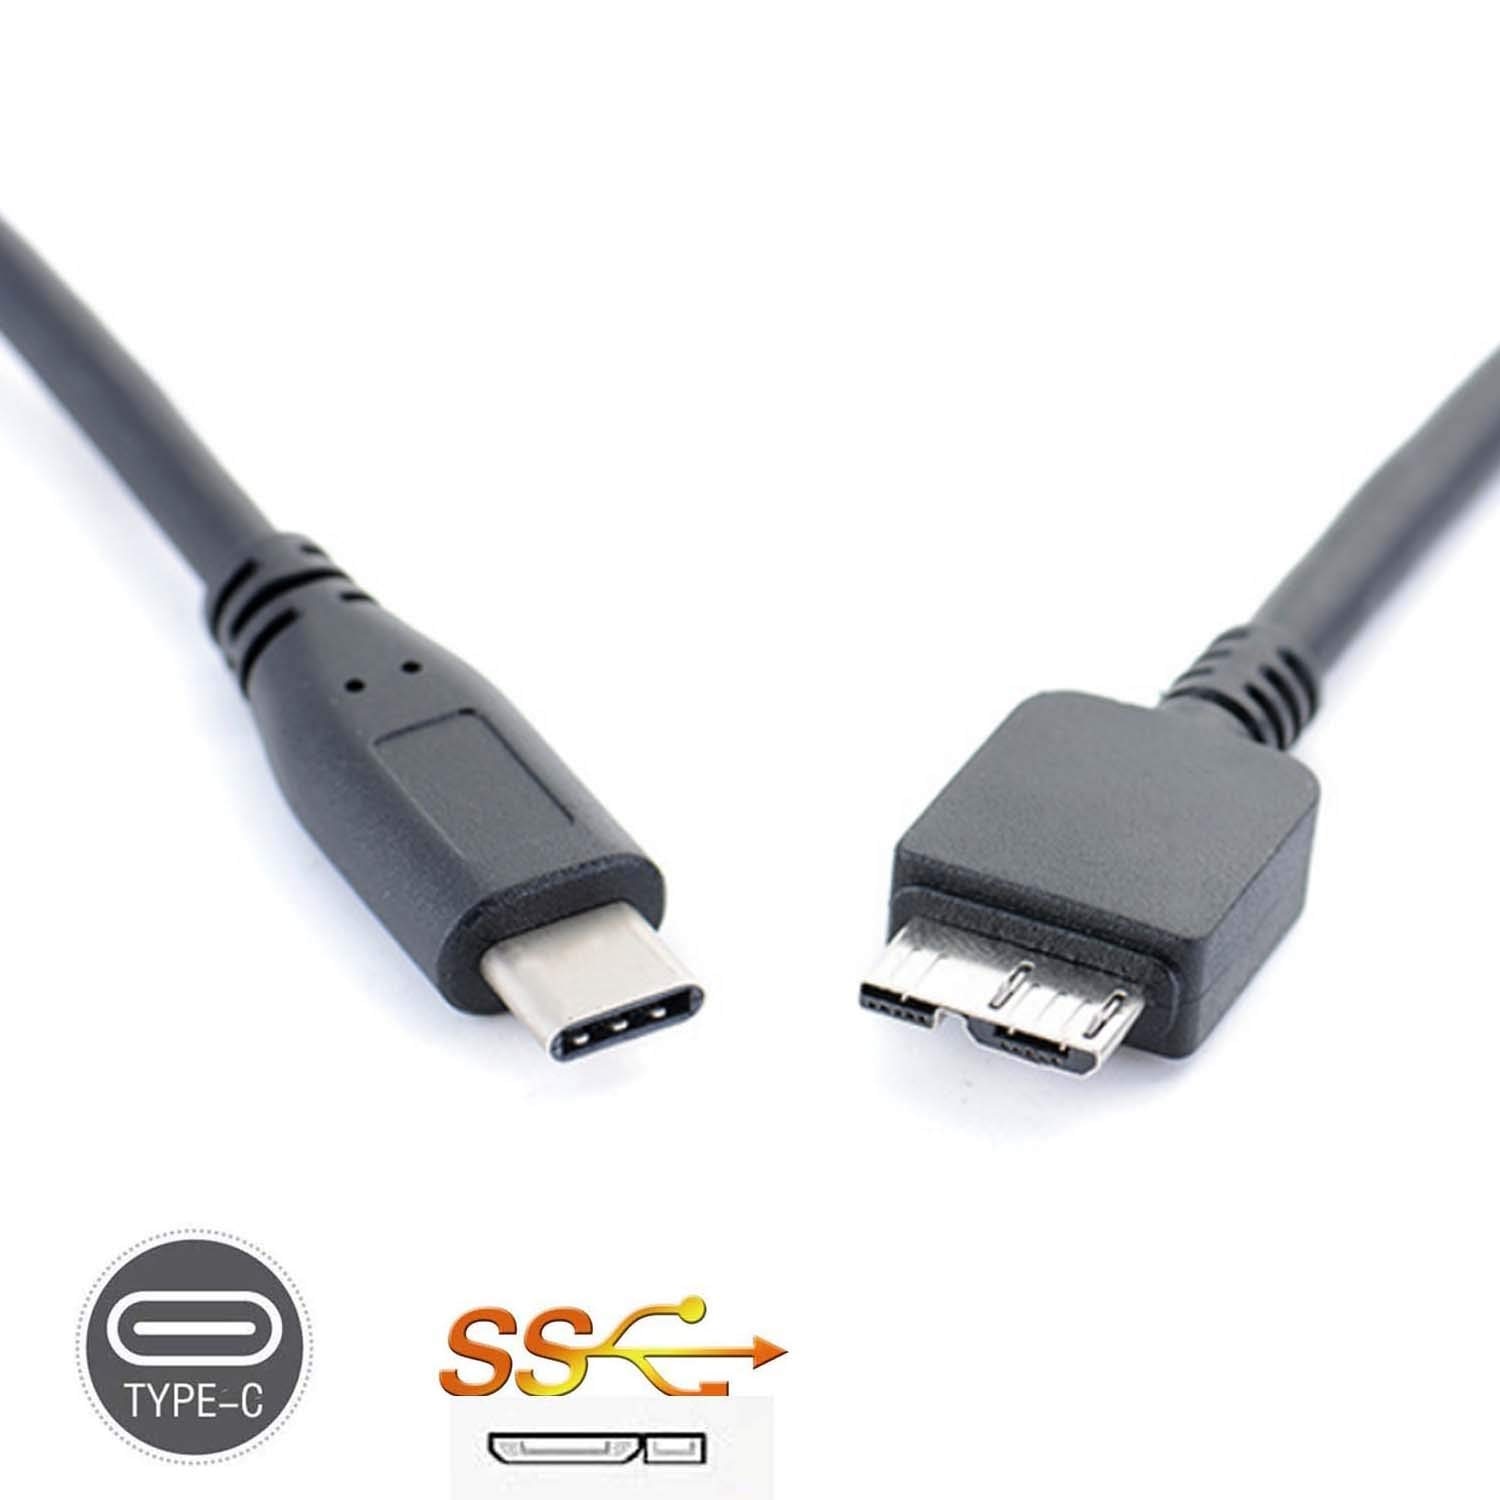 USB 3.1 Type-C naar USB 3.0 Micro B Kabel Connector Voor Hard Drive Smartphone MOBIELE TELEFOON PC